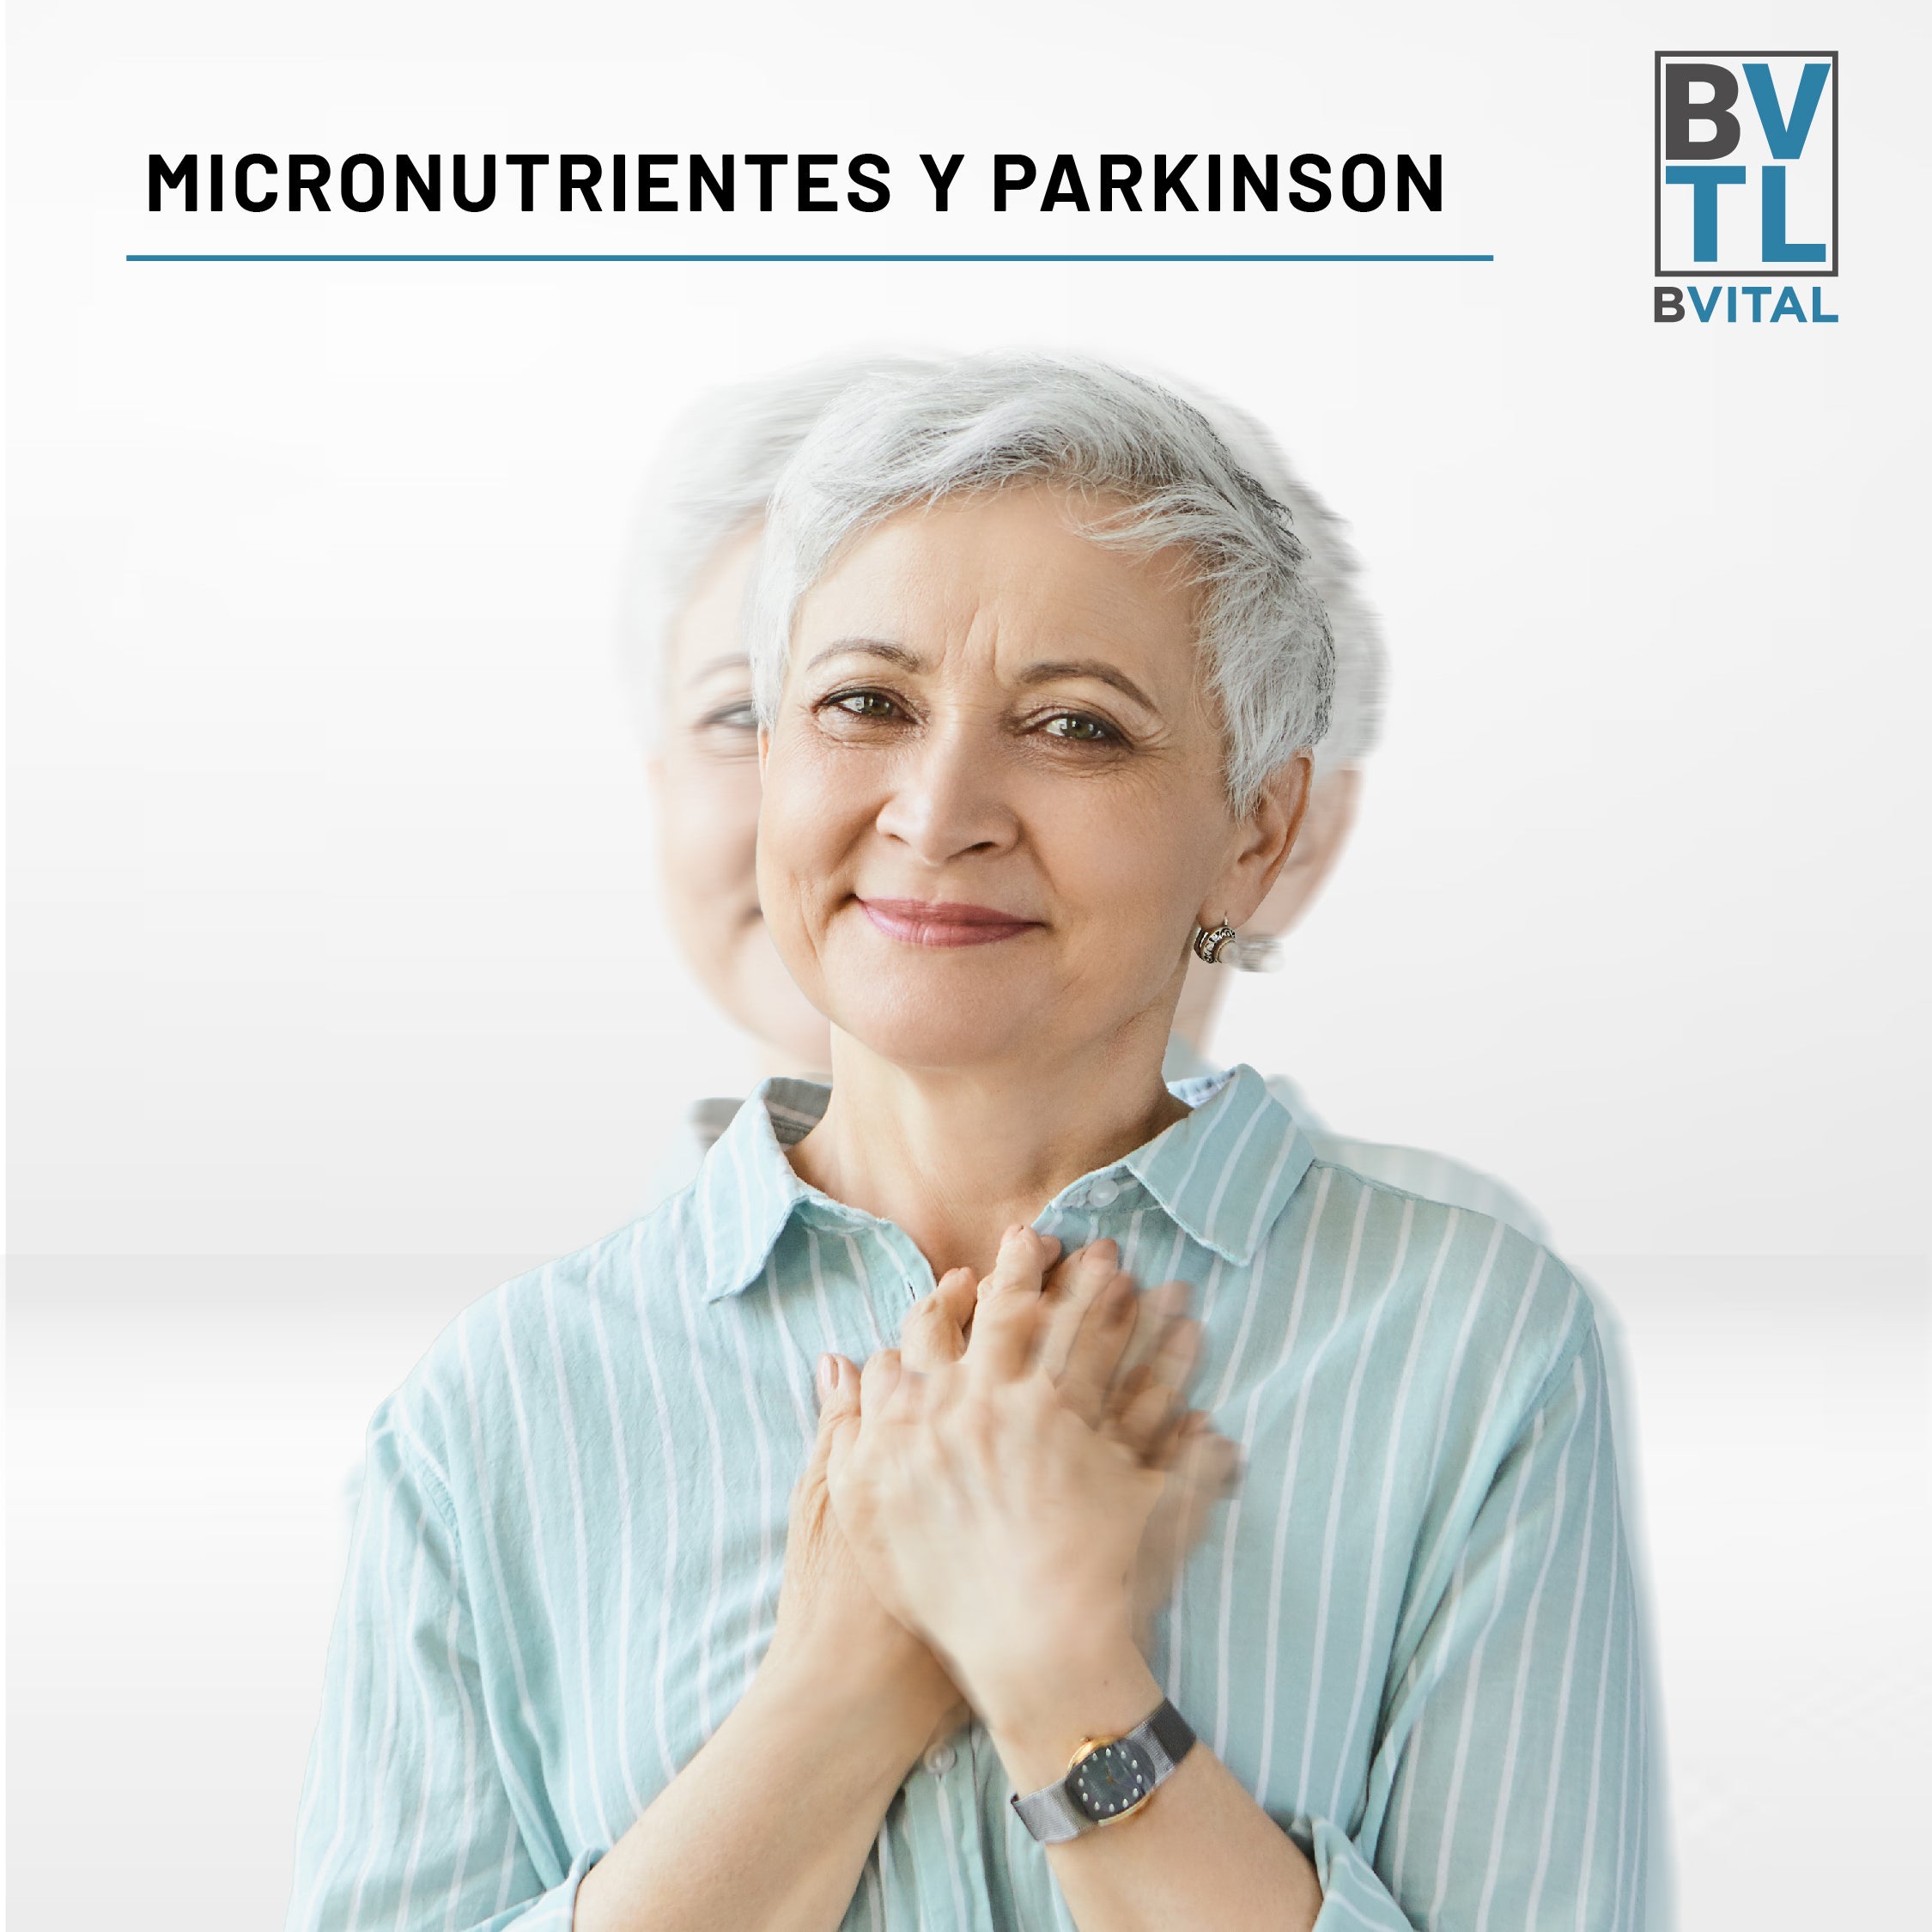 Micronutrientes y Parkinson